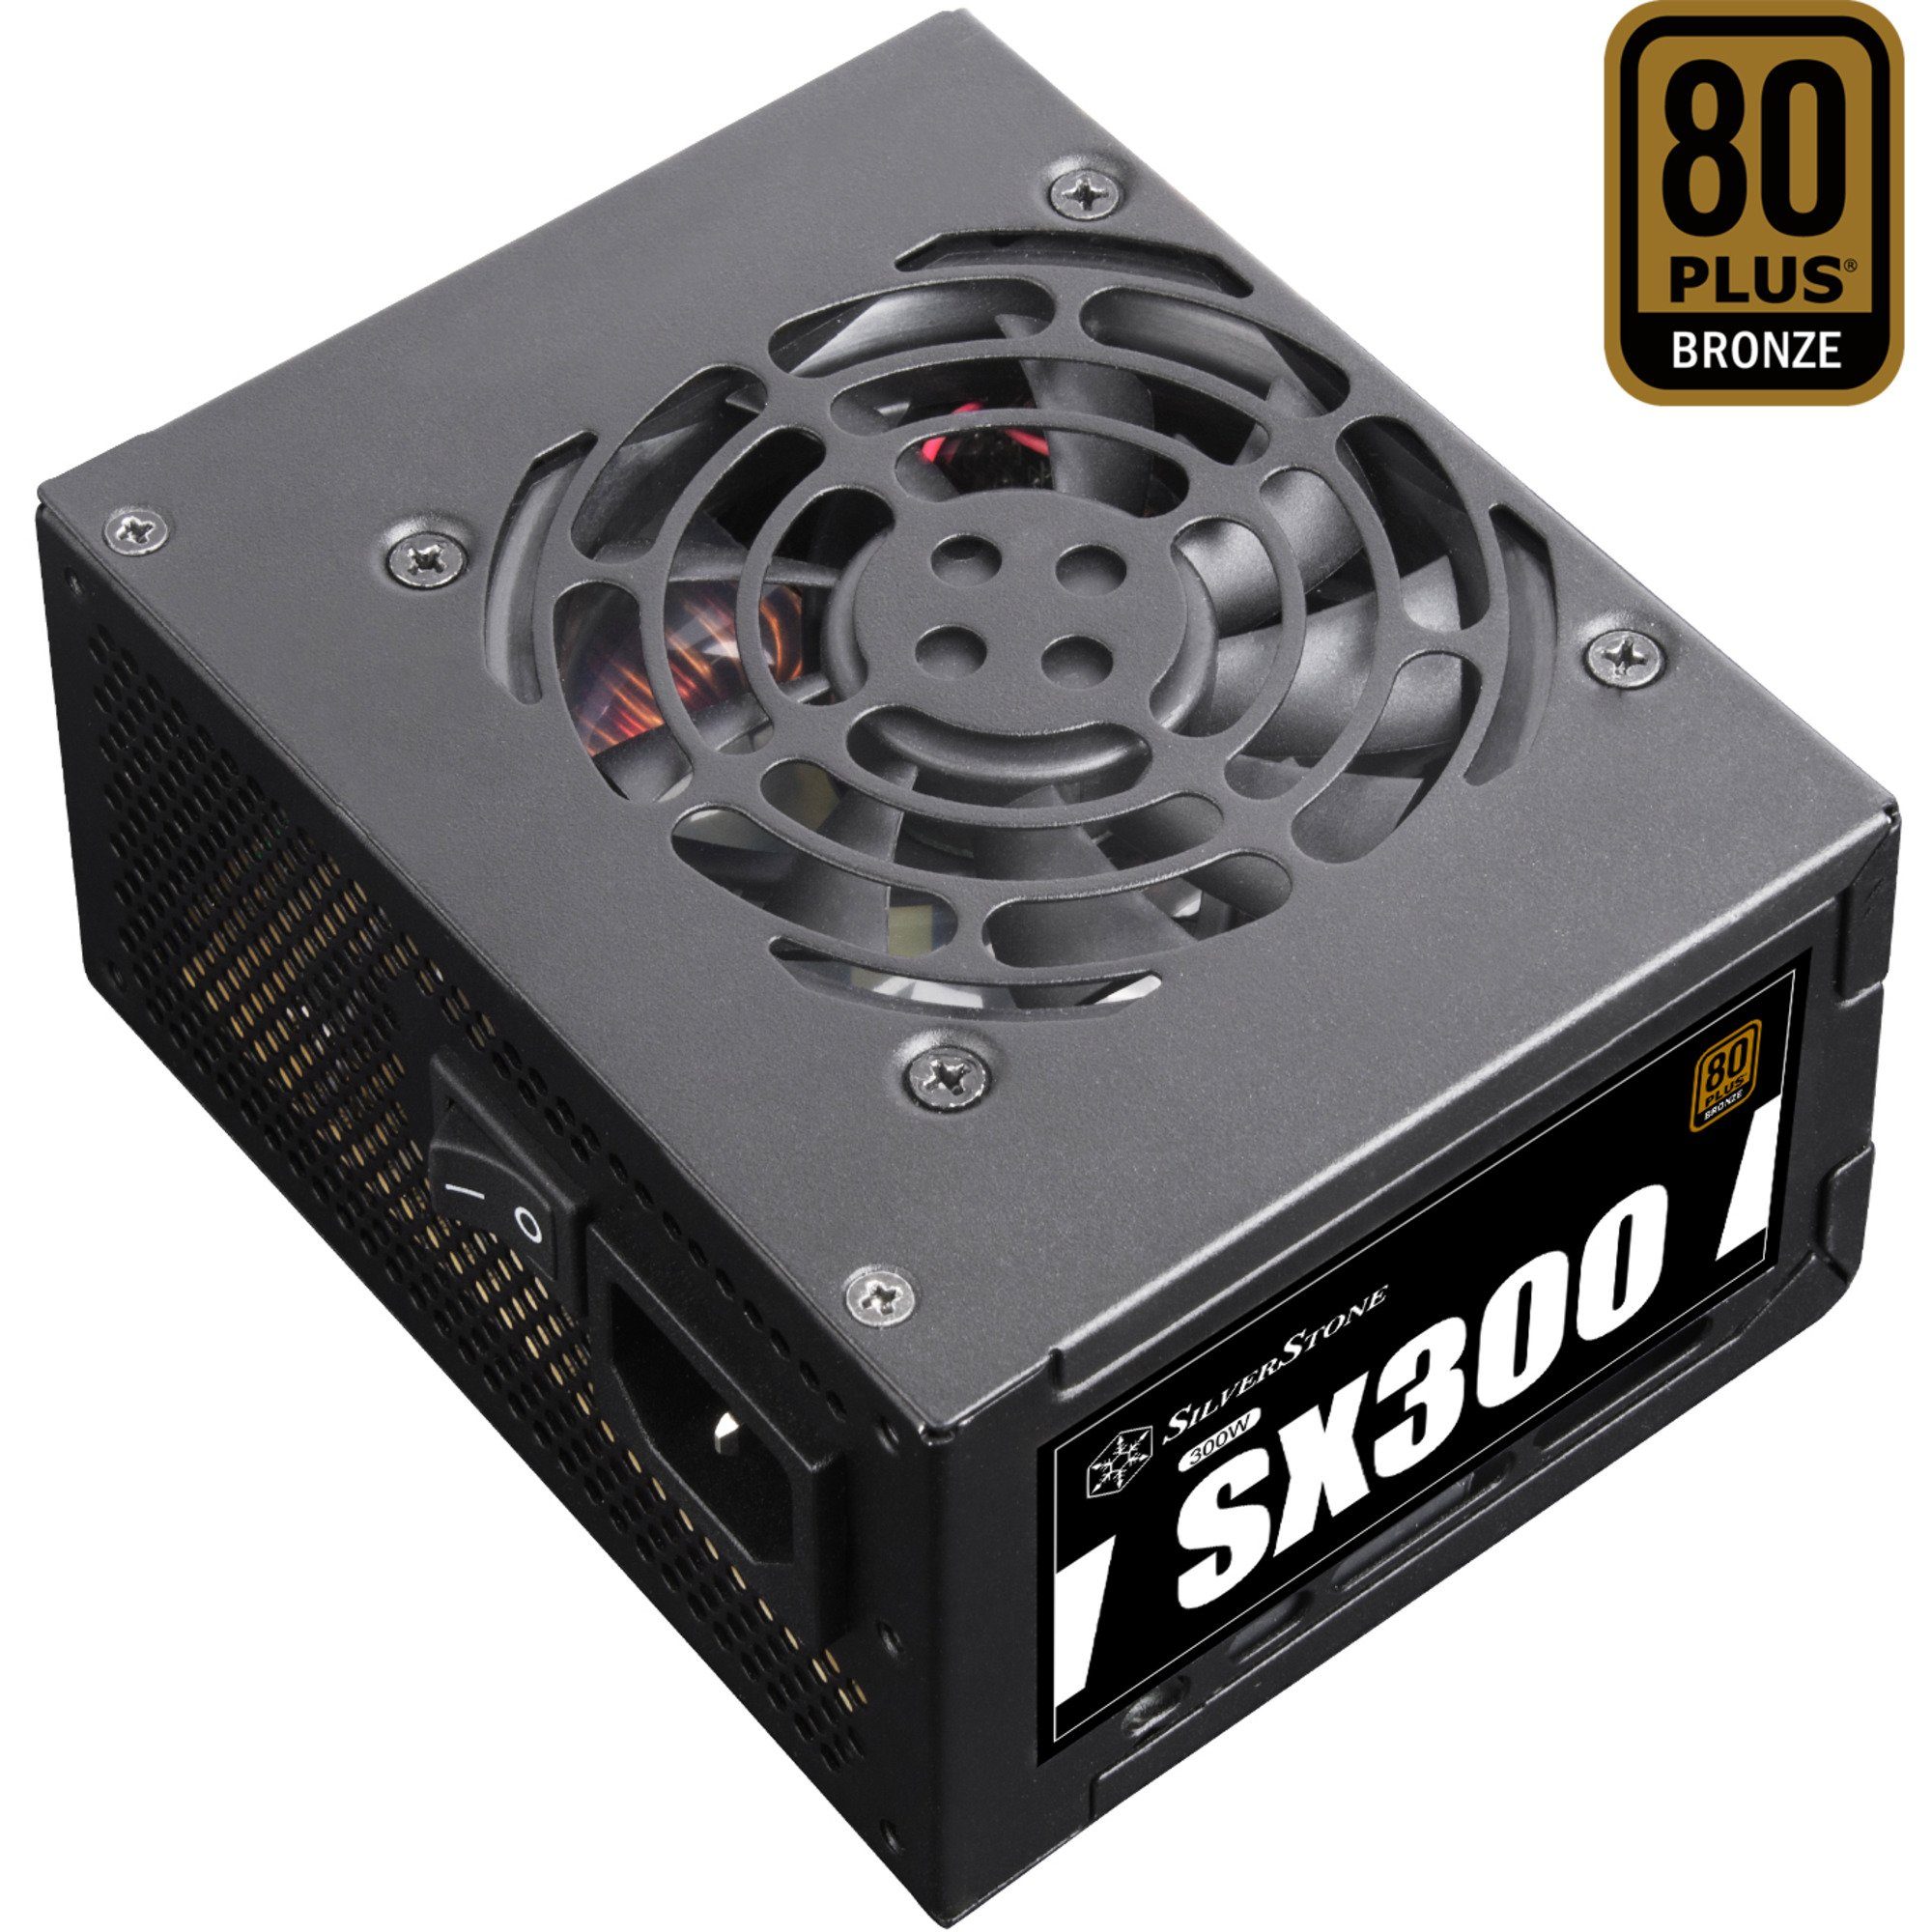 Silverstone »SST-SX300-B 300W, 1x PCIe« PC-Netzteil online kaufen | OTTO